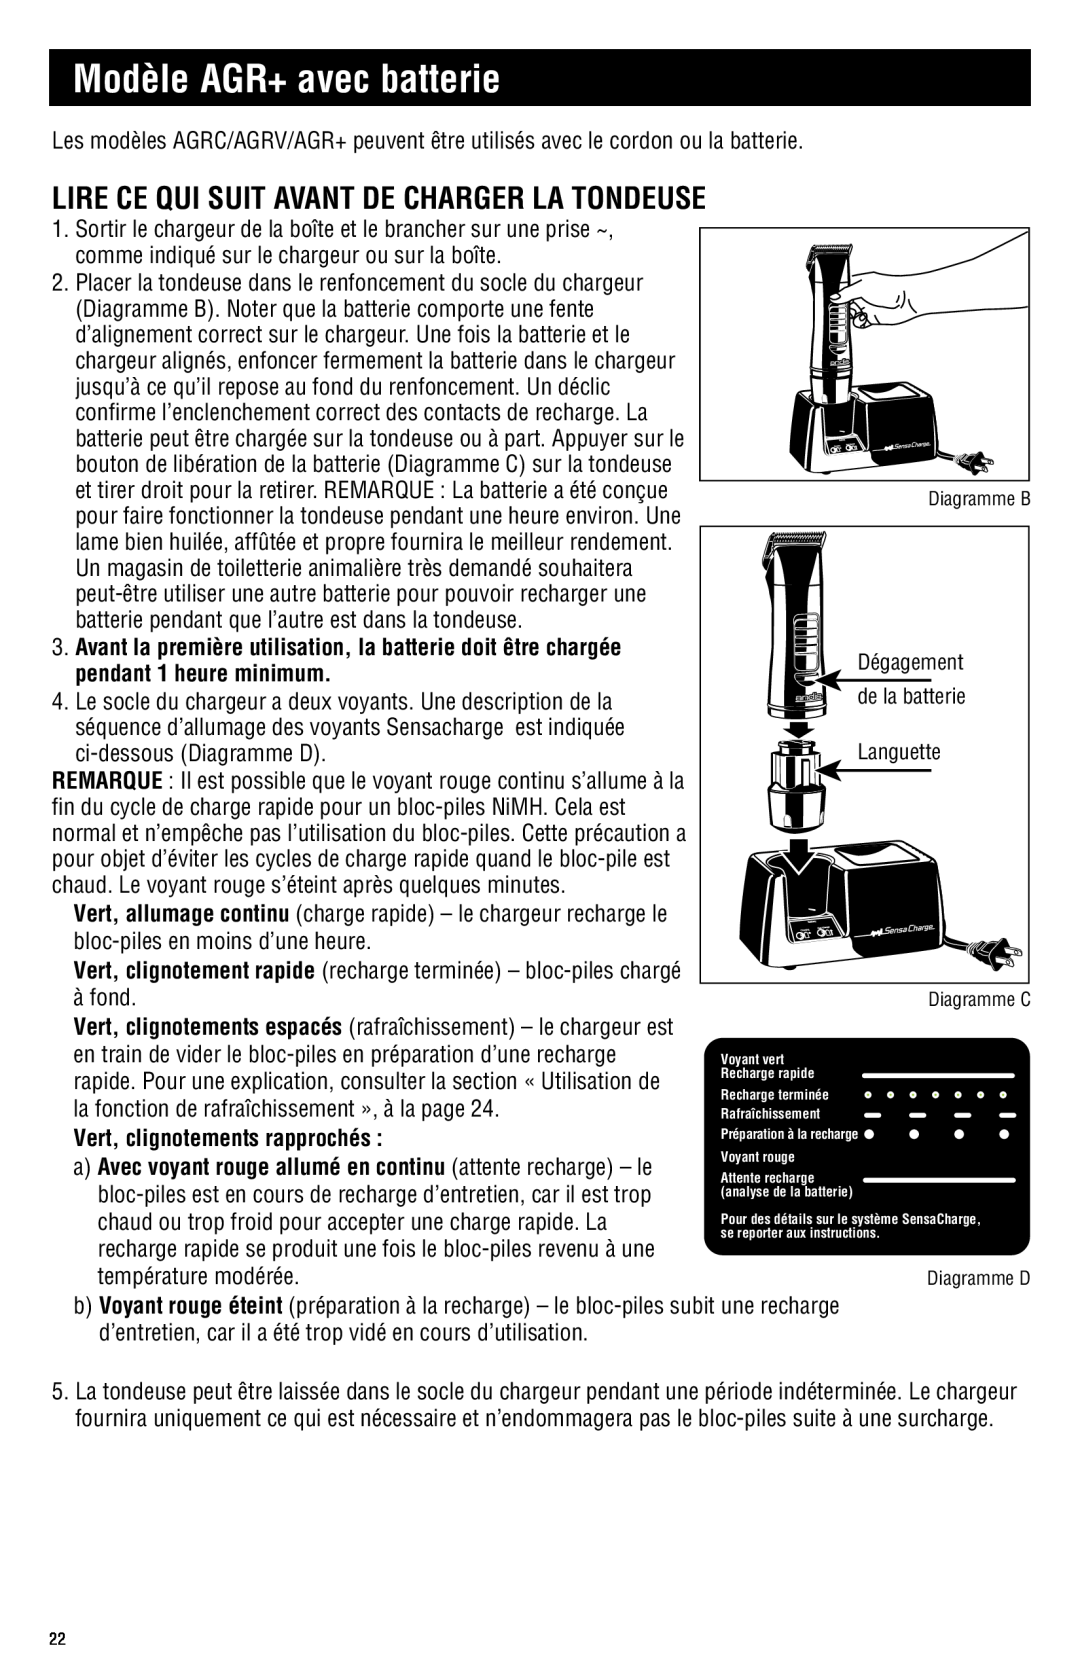 Andis Company AGRC manual Modèle AGR+ avec batterie, Lire Ce Qui Suit Avant De Charger La Tondeuse 